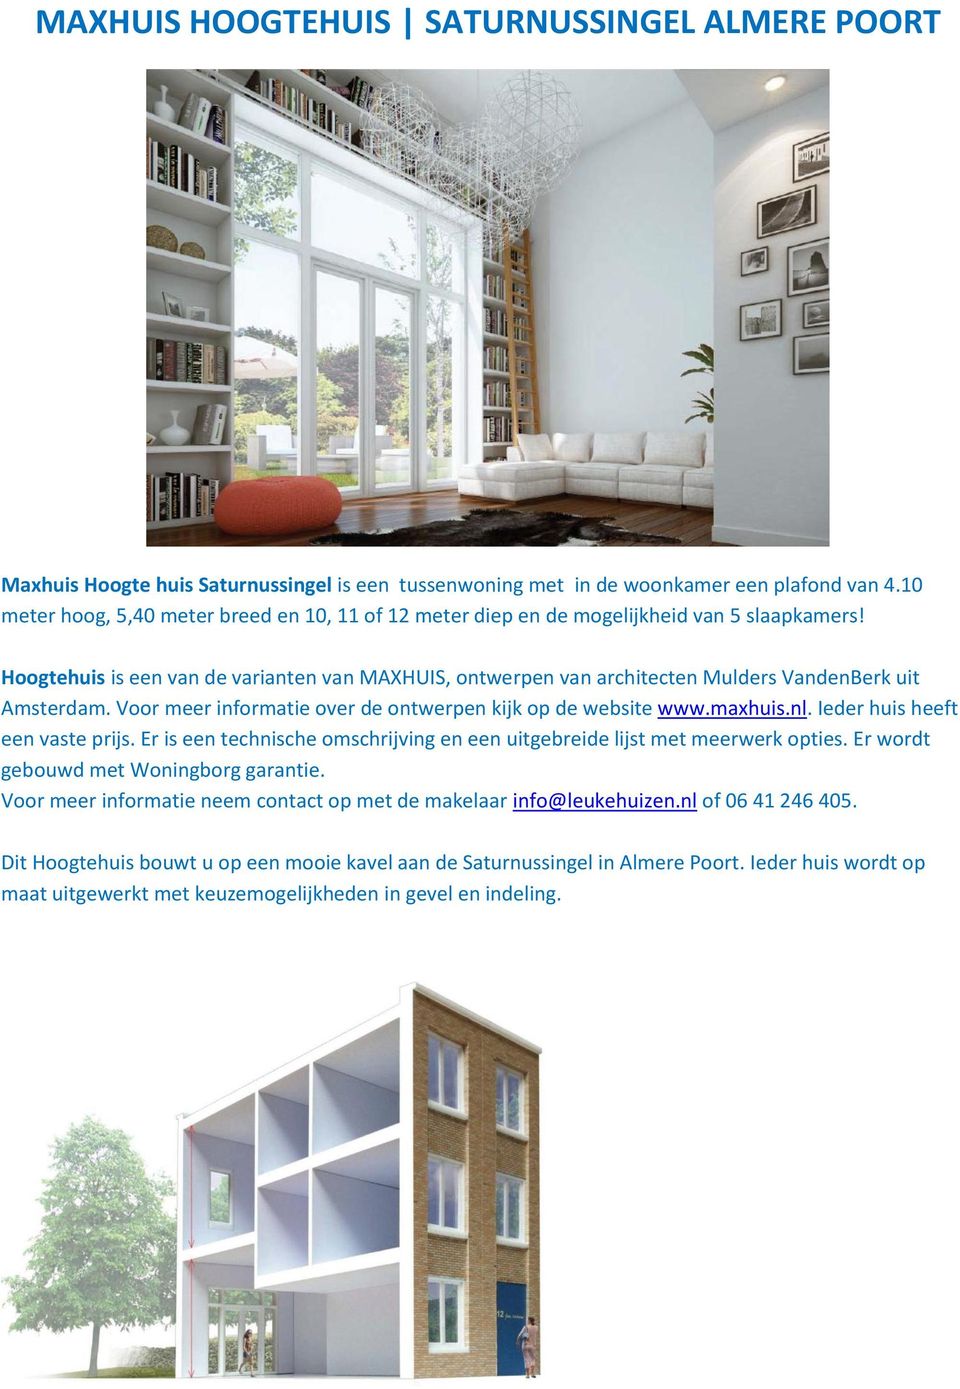 Hoogtehuis is een van de varianten van MAXHUIS, ontwerpen van architecten Mulders VandenBerk uit Amsterdam. Voor meer informatie over de ontwerpen kijk op de website www.maxhuis.nl.